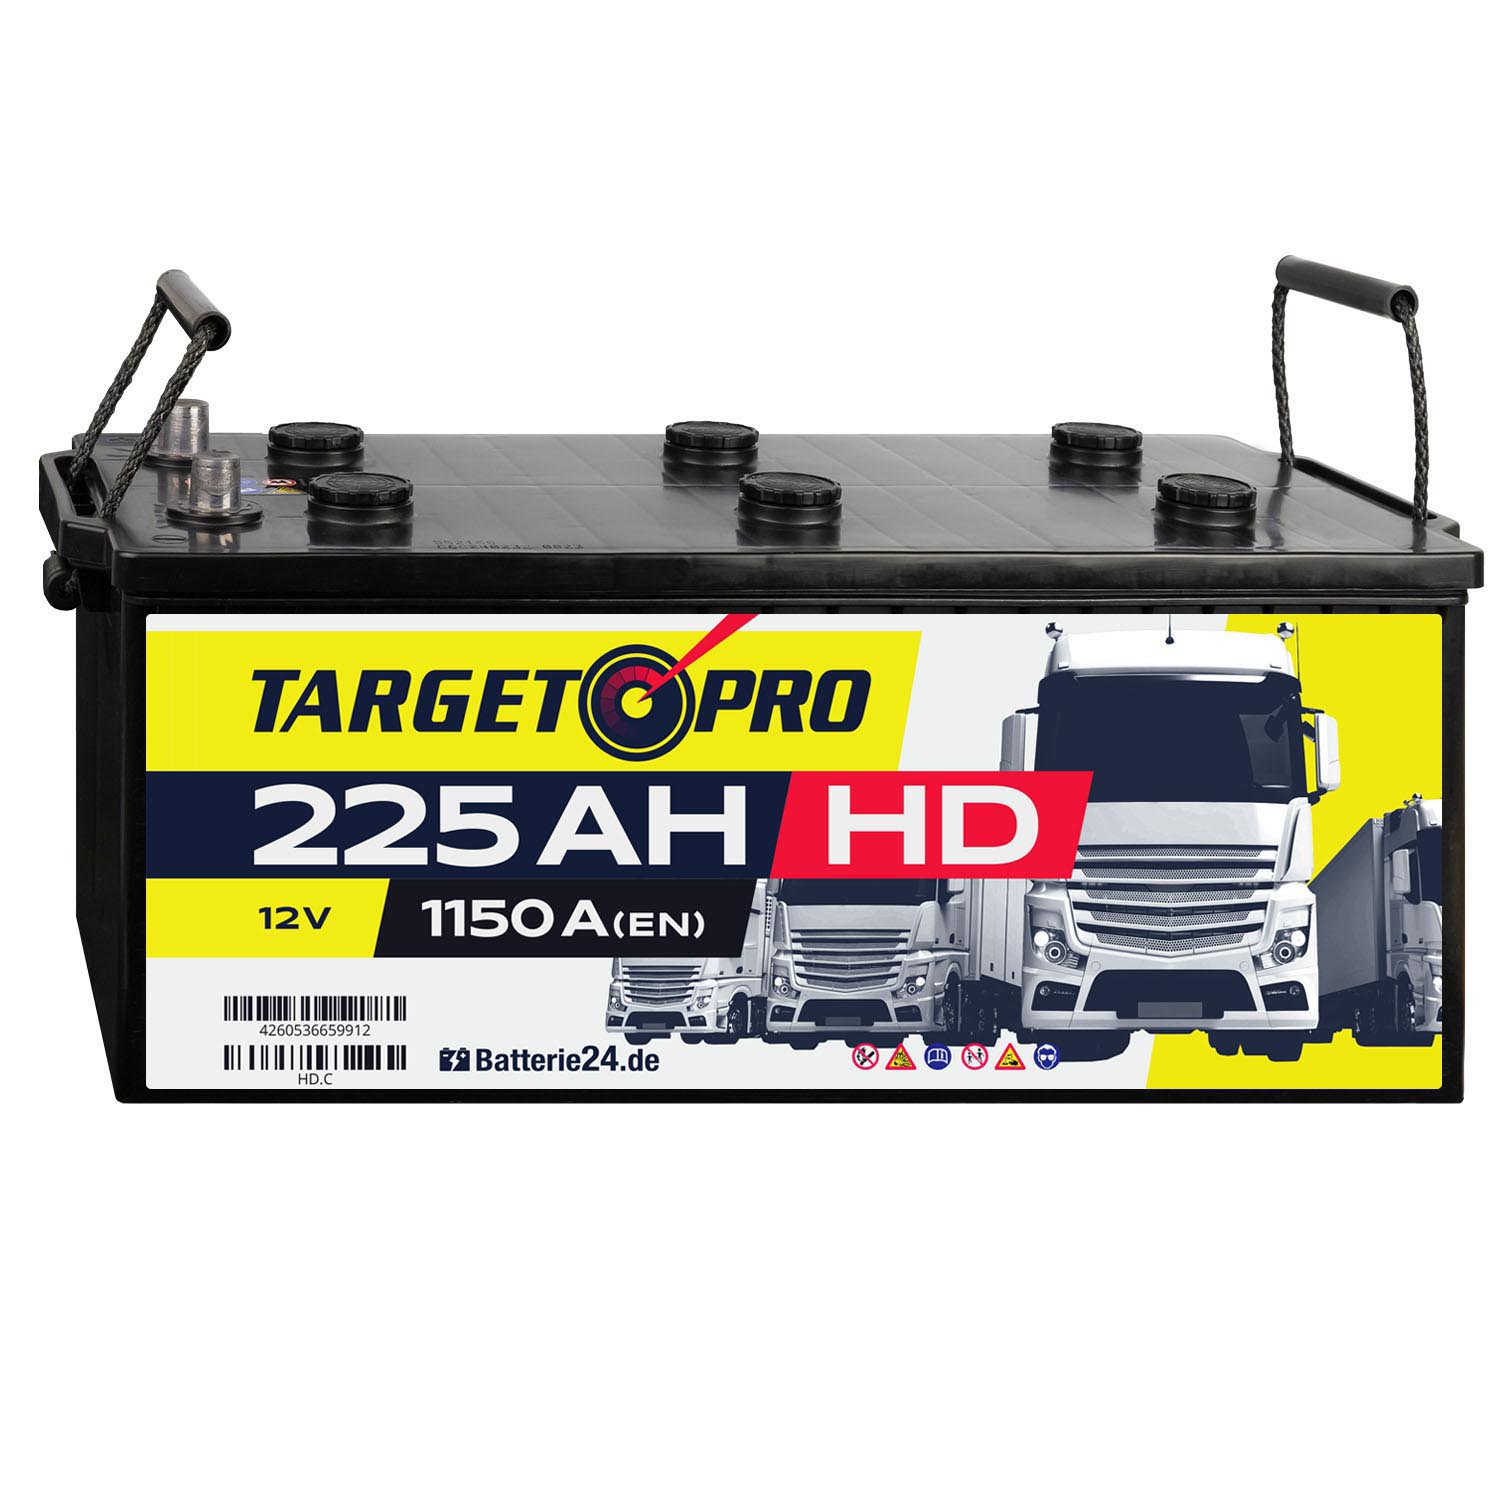 Target Pro HD 12V 225Ah LKW Batterie